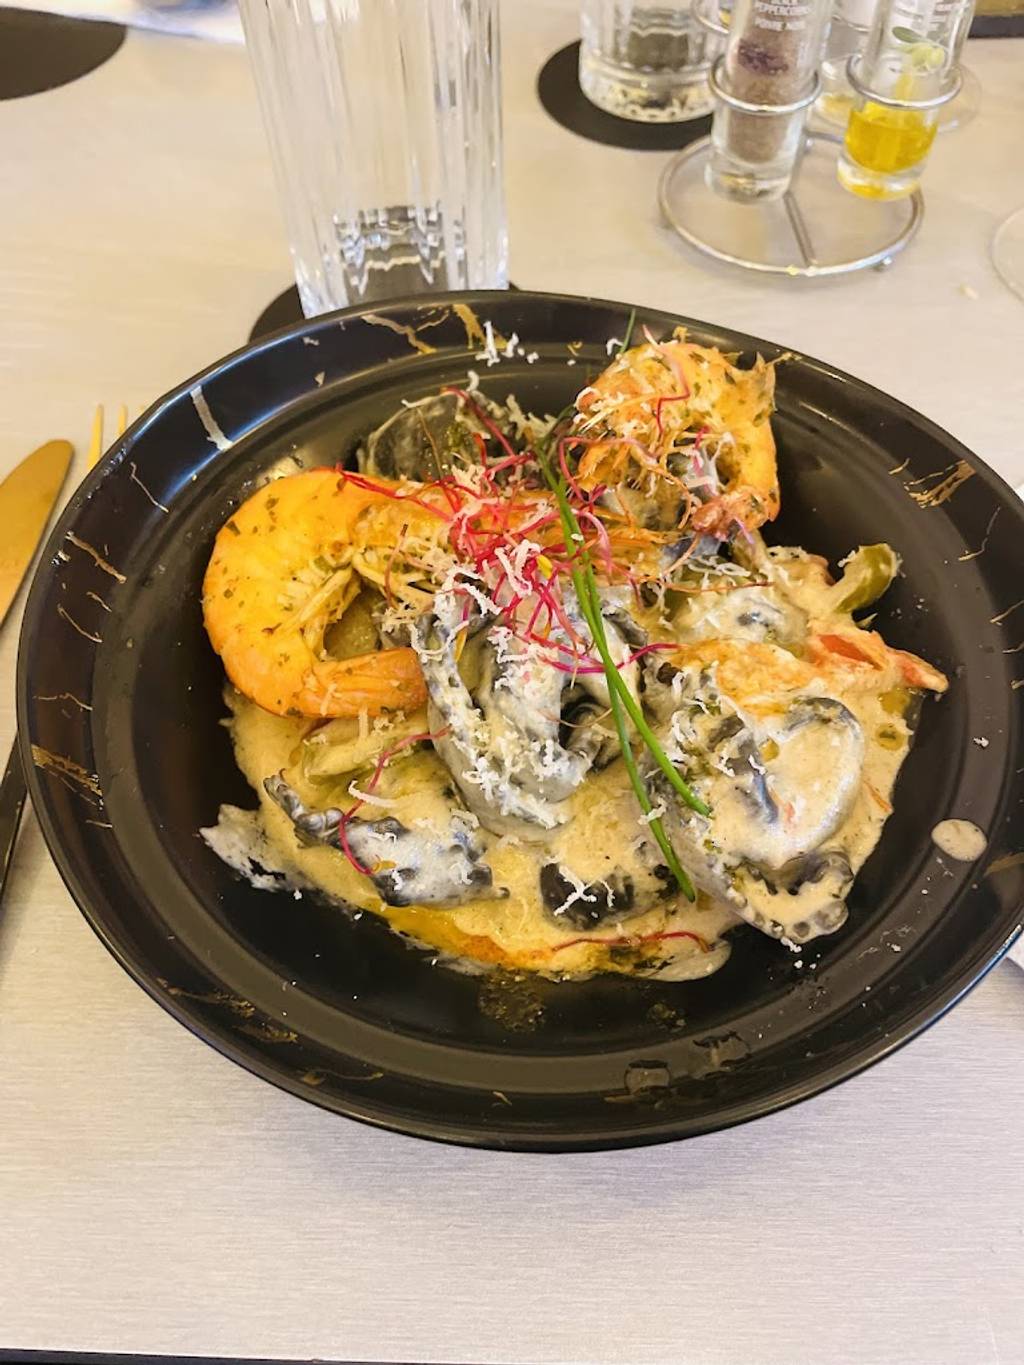 Le Pastalicious (pâtes fraîches dans la meule) Lyon - Food Tableware Plate Ingredient Recipe